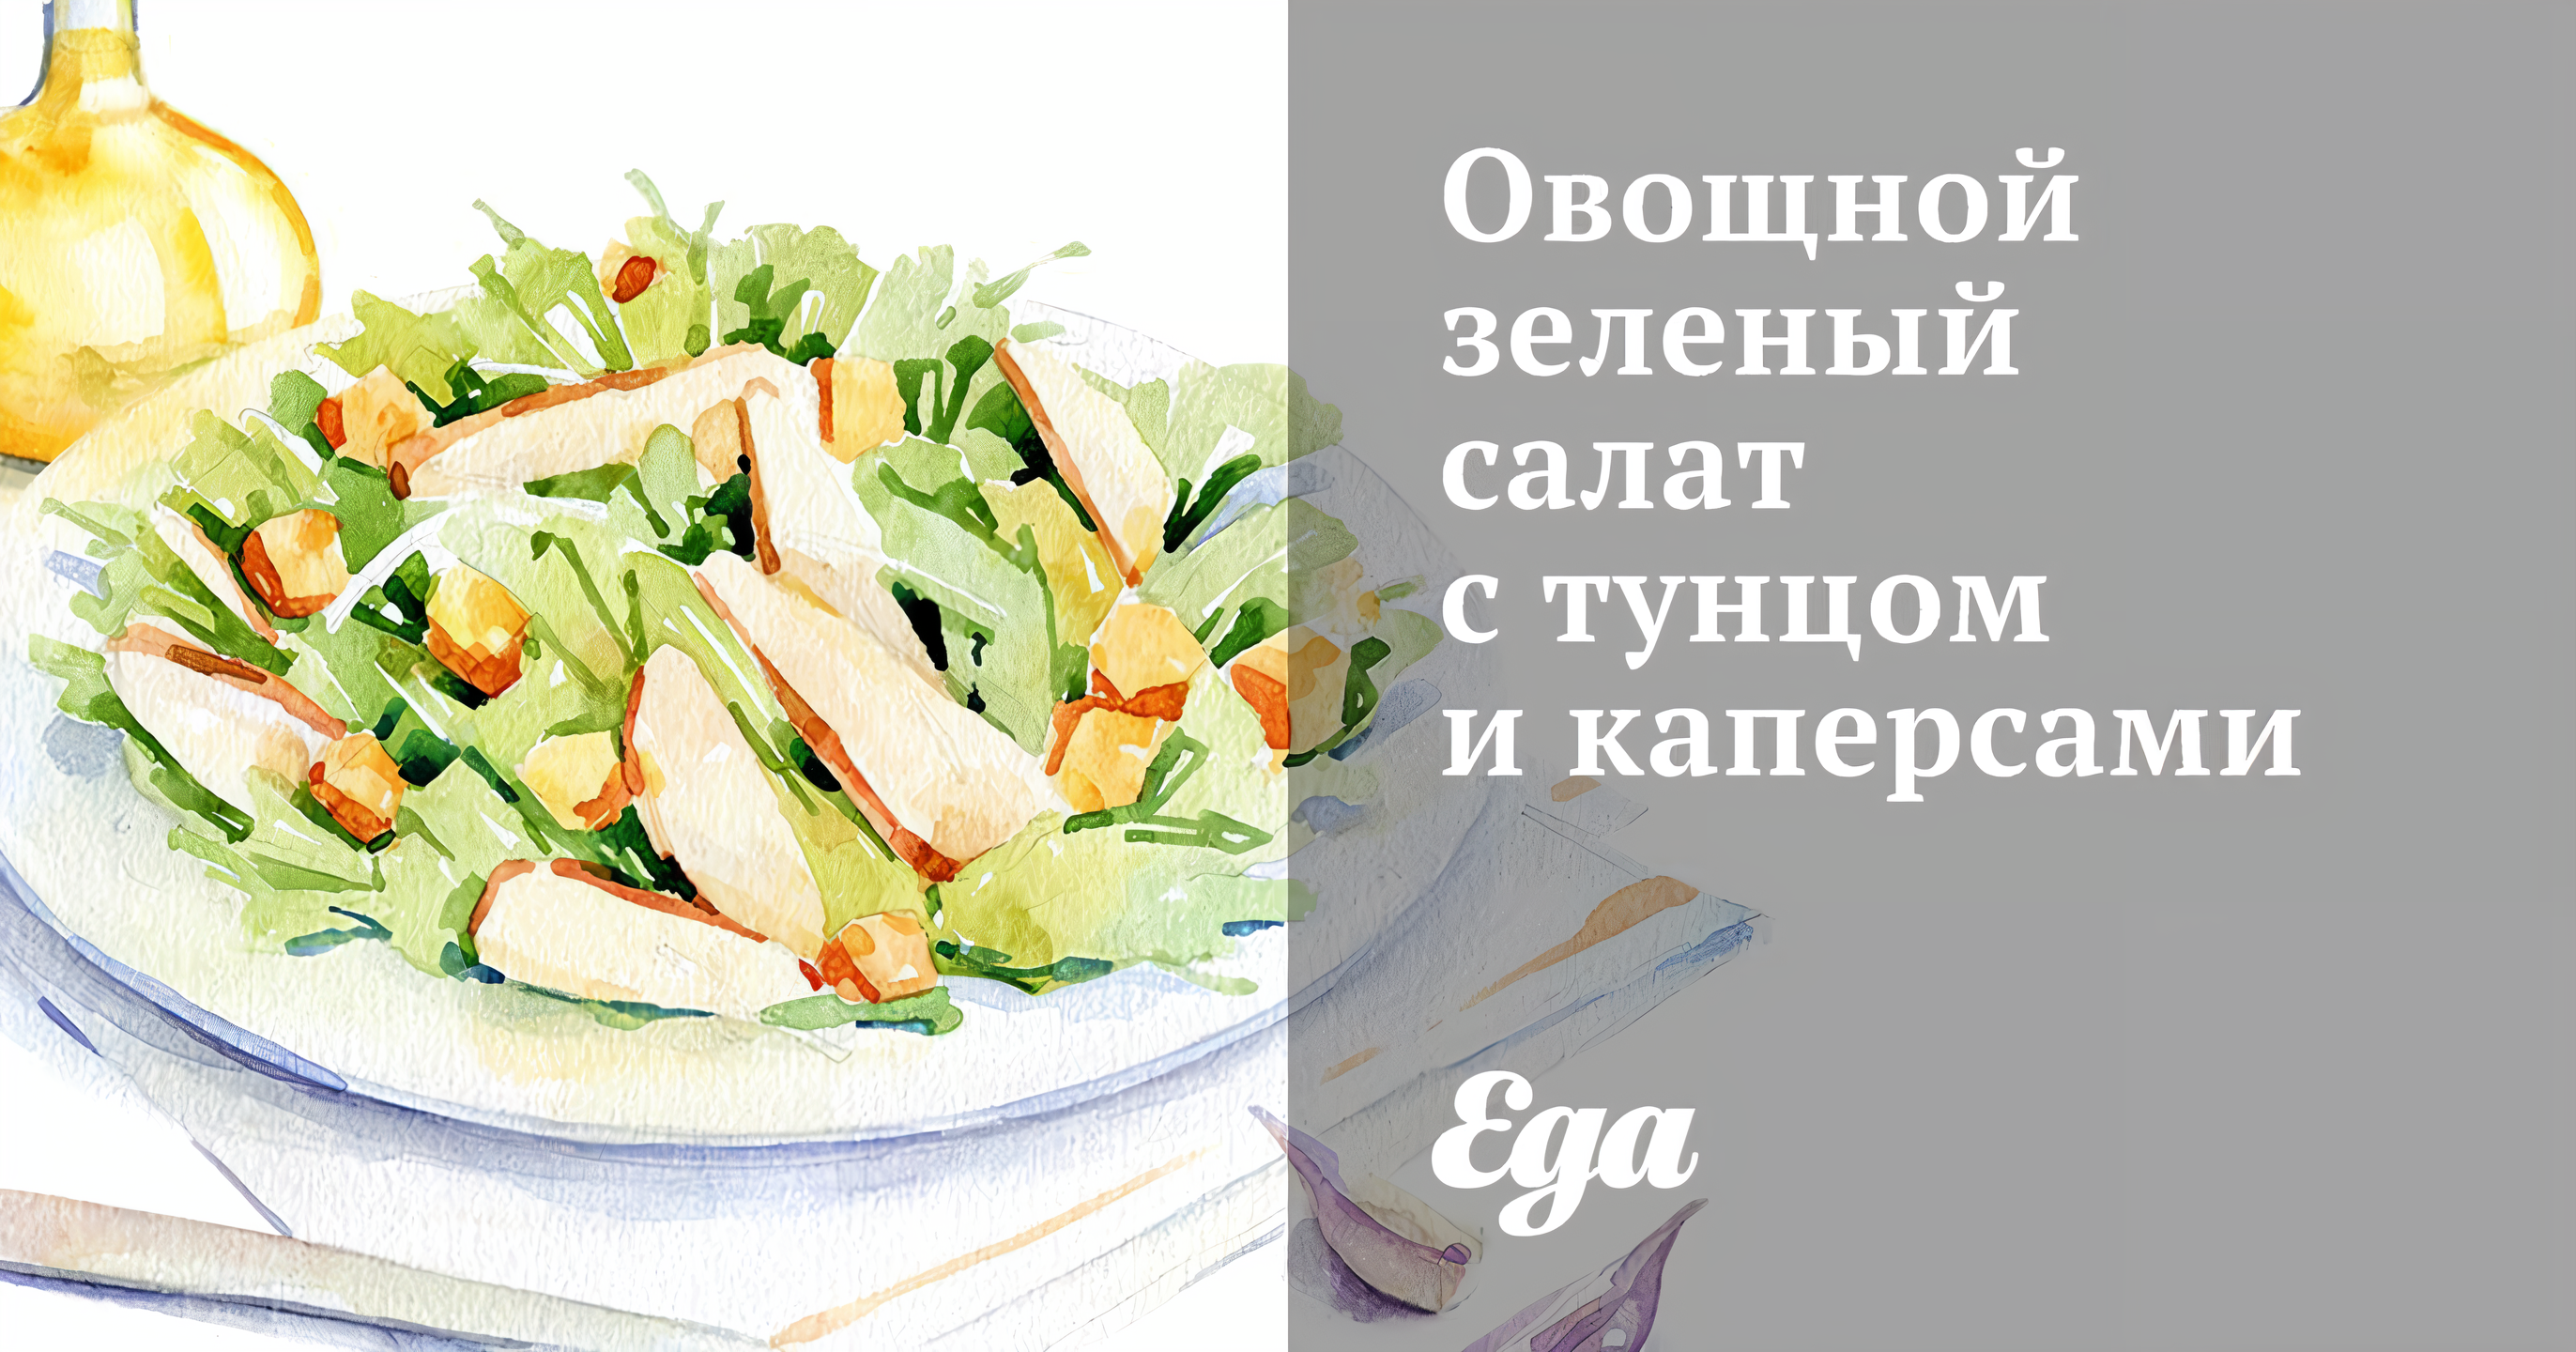 Овощной зеленый салат с тунцом и каперсами